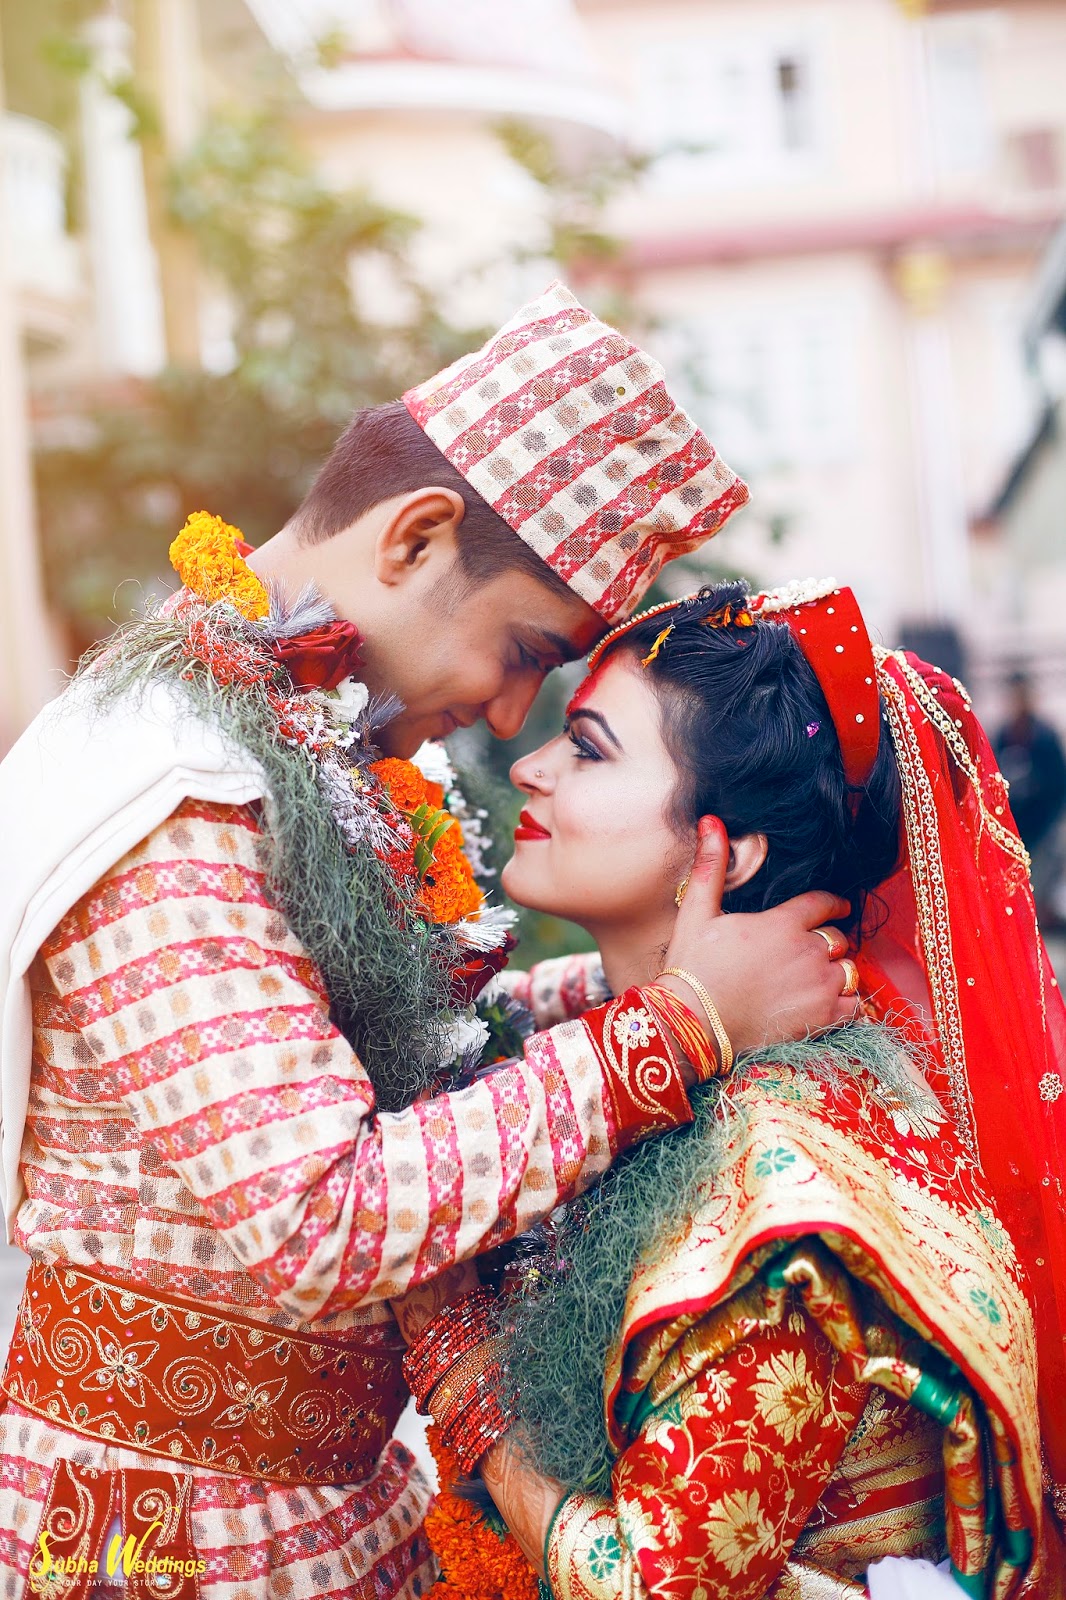 Subhaweddings Photography News Wedding Photographer In Nepal